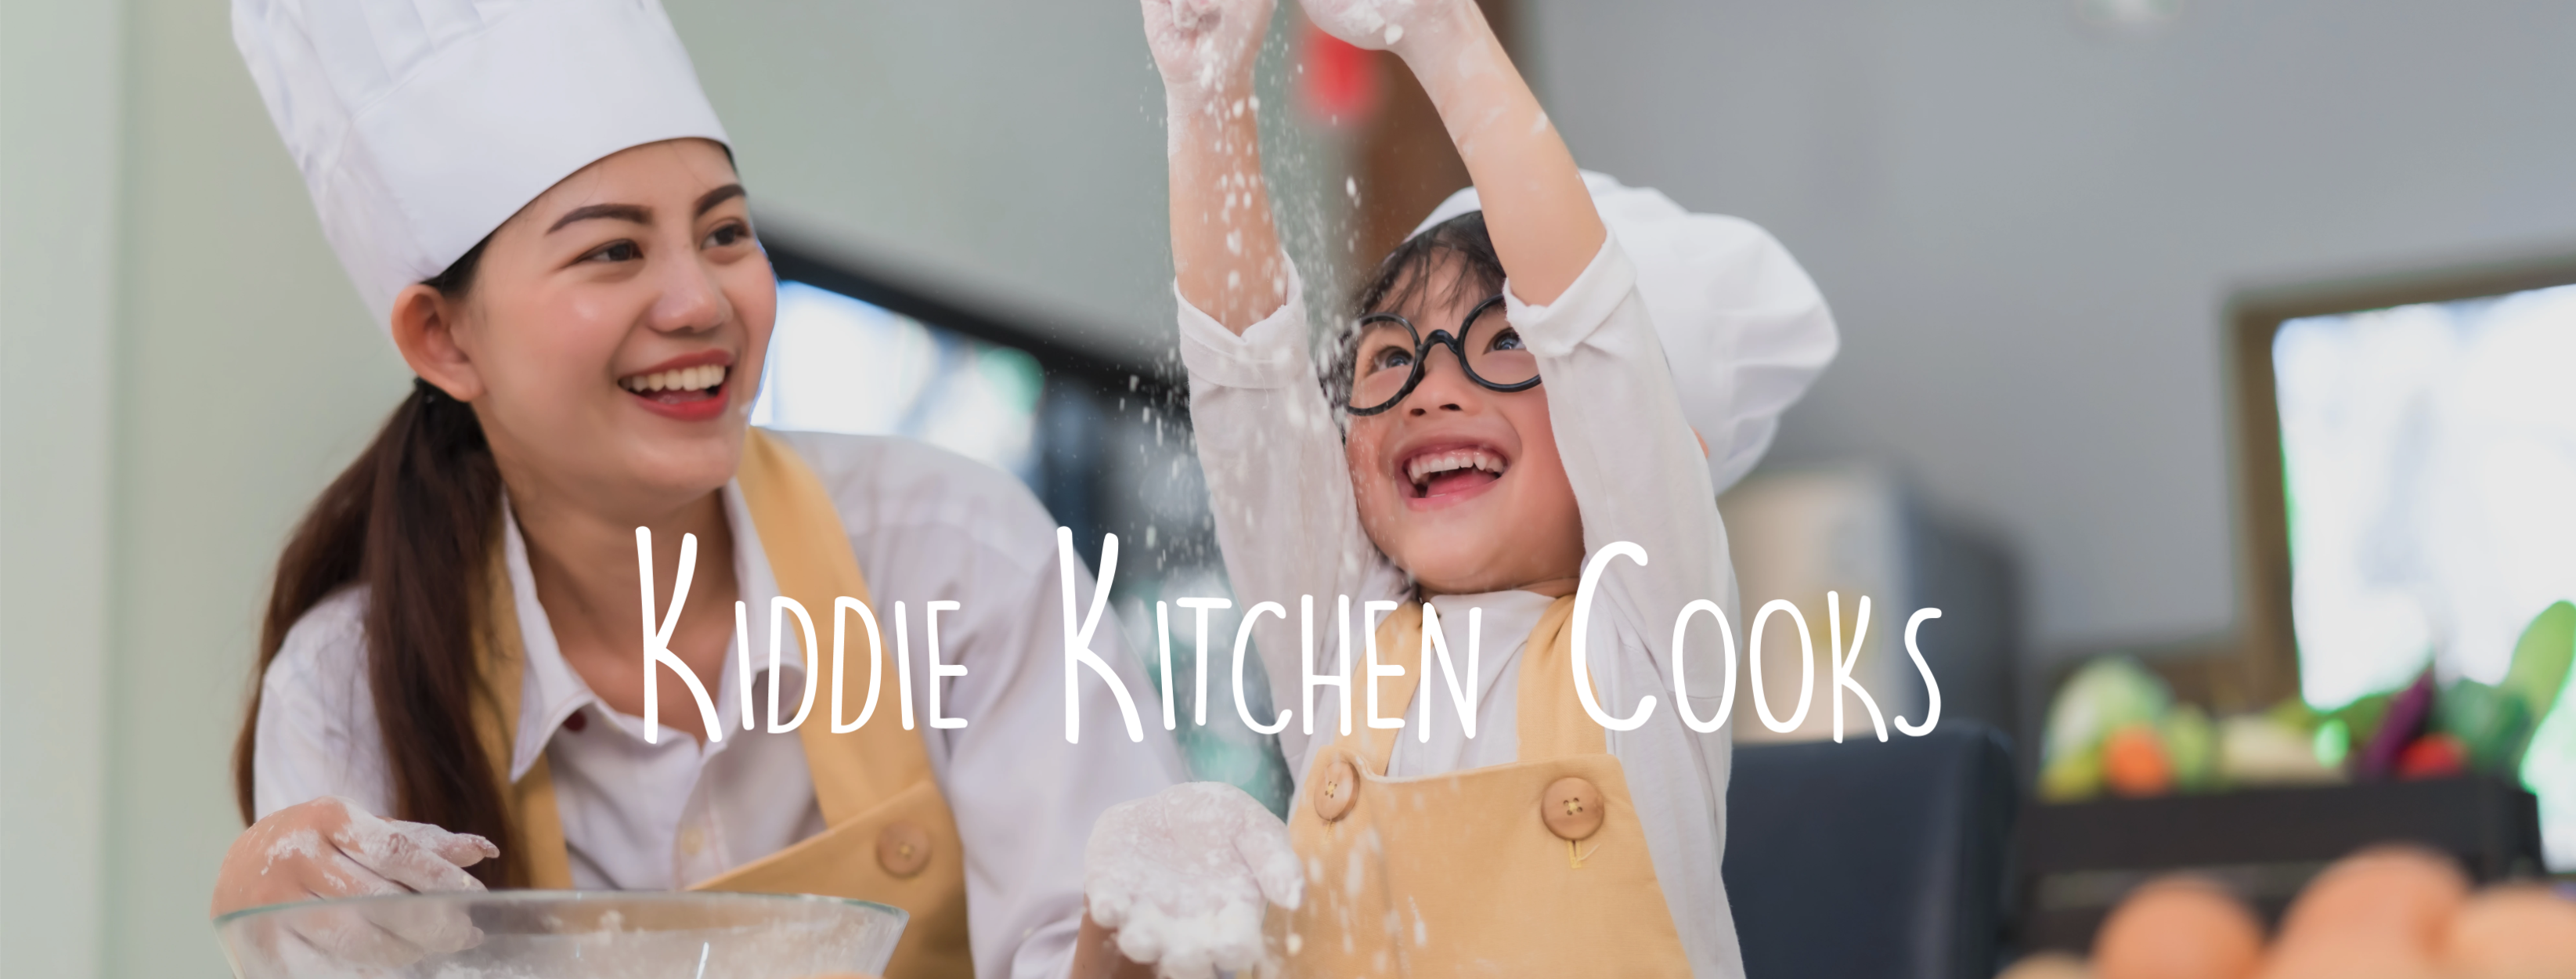 Kiddie Kitchen Cooks